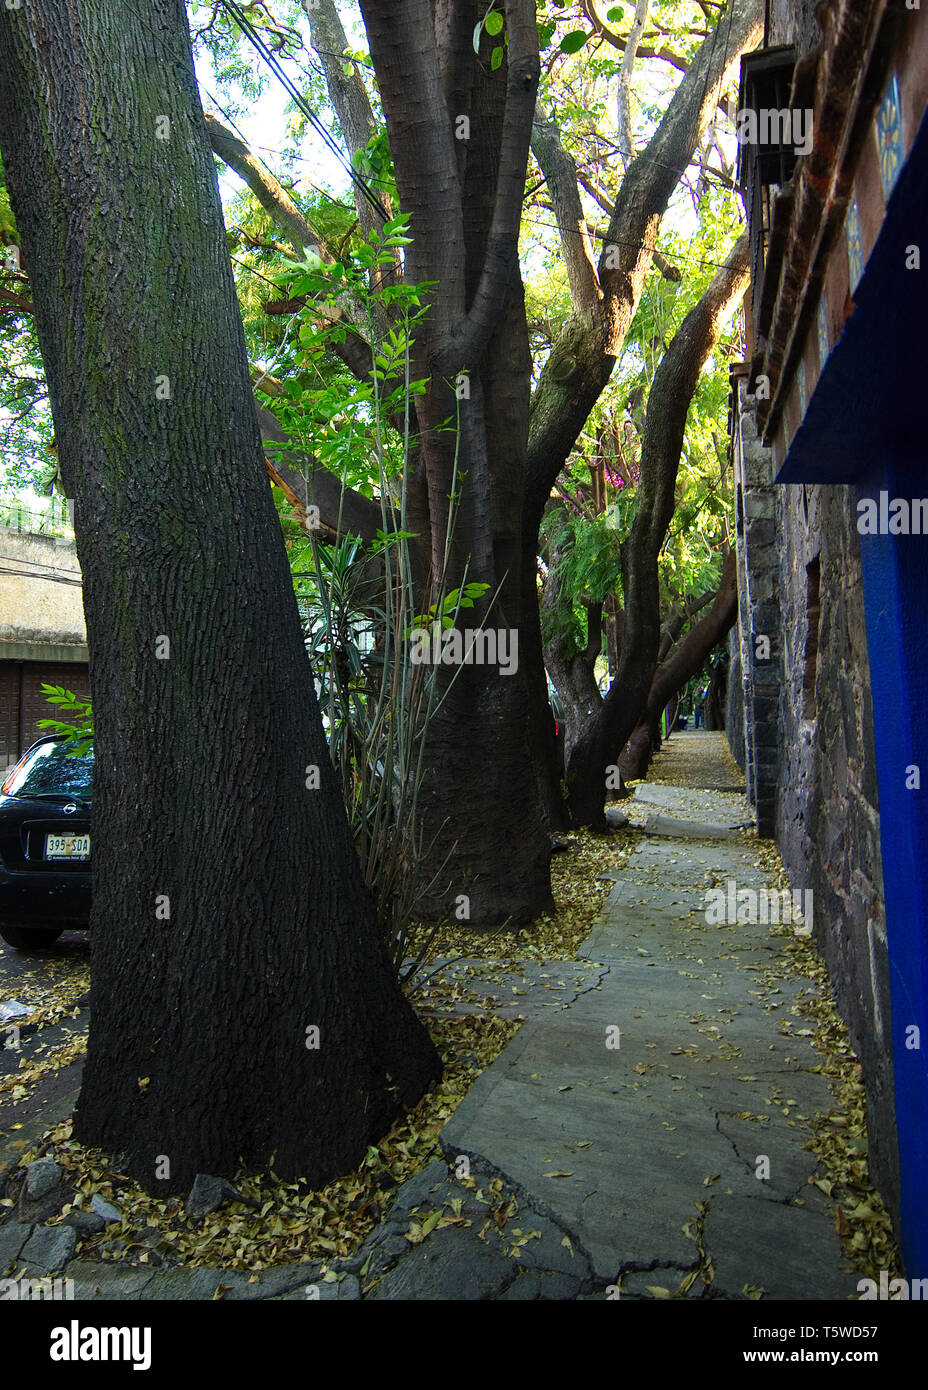 Mexiko City, Mexiko - 2018: Blick auf einem Bürgersteig in der coyoacan von großen Bäumen, wie üblich in dieser Nachbarschaft. Stockfoto